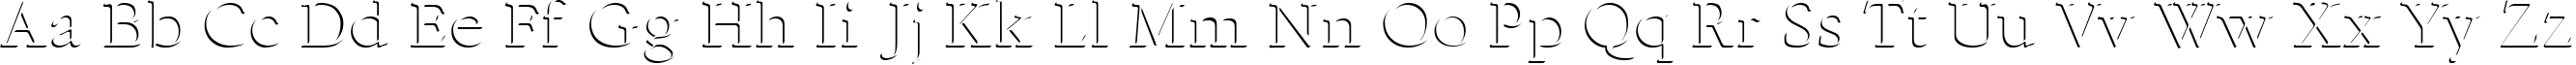 Пример написания английского алфавита шрифтом Emboss-Normal